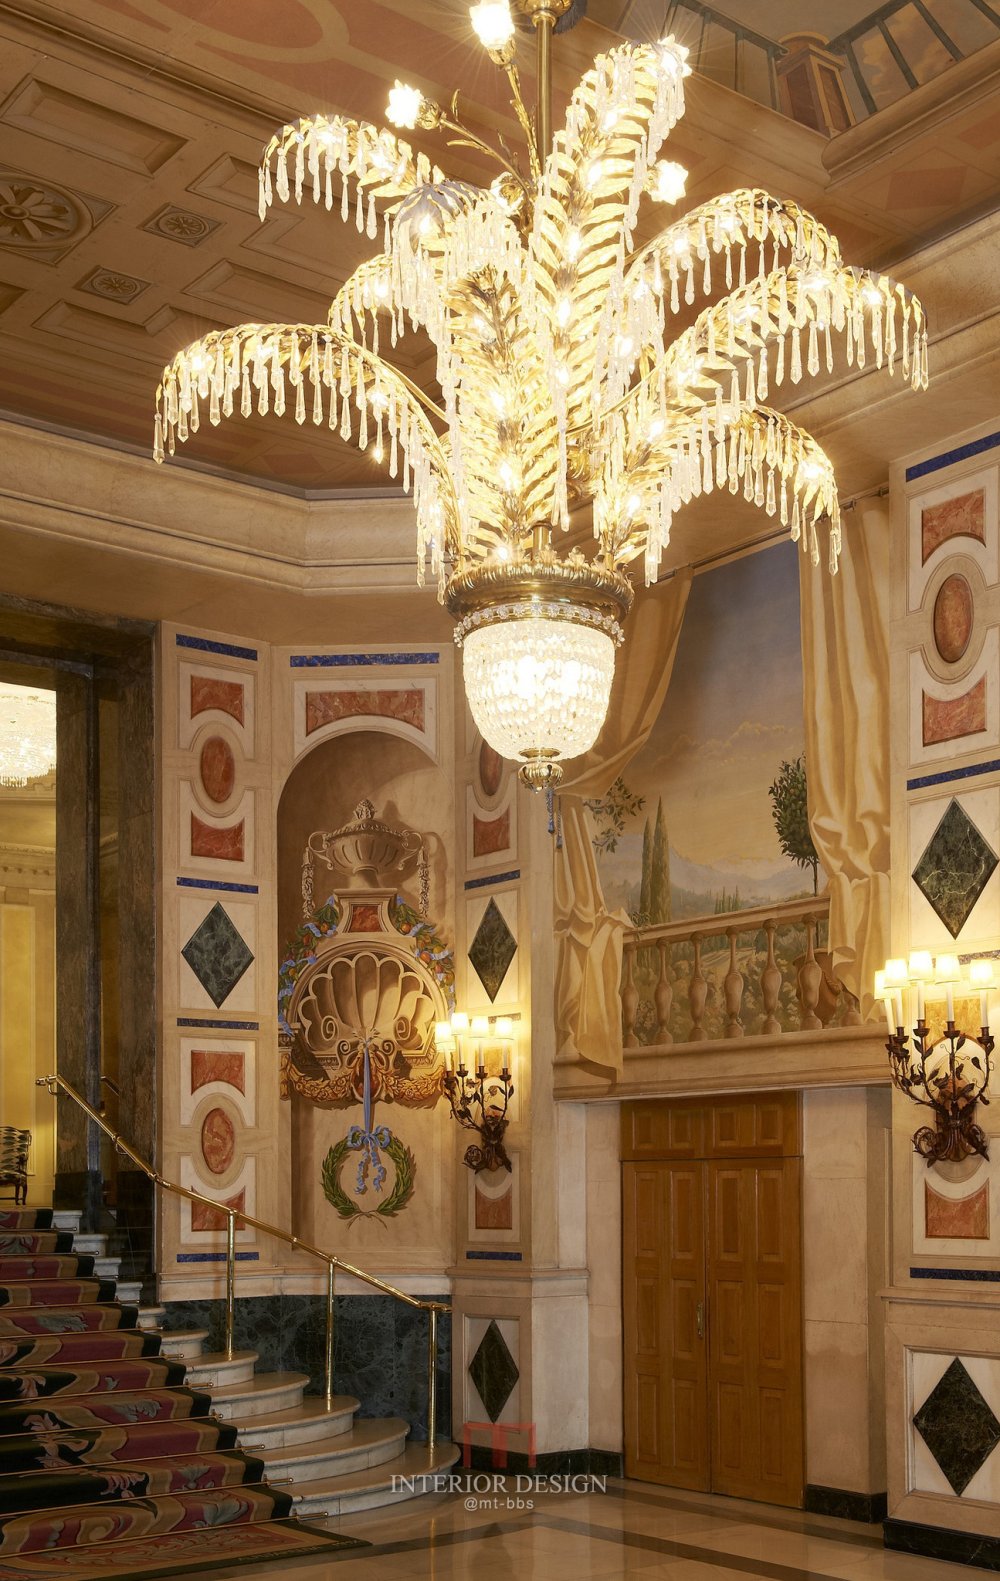 马德里威斯汀酒店(官方摄影) The Westin Palace, Madrid_8438066084_8df636a039_k.jpg